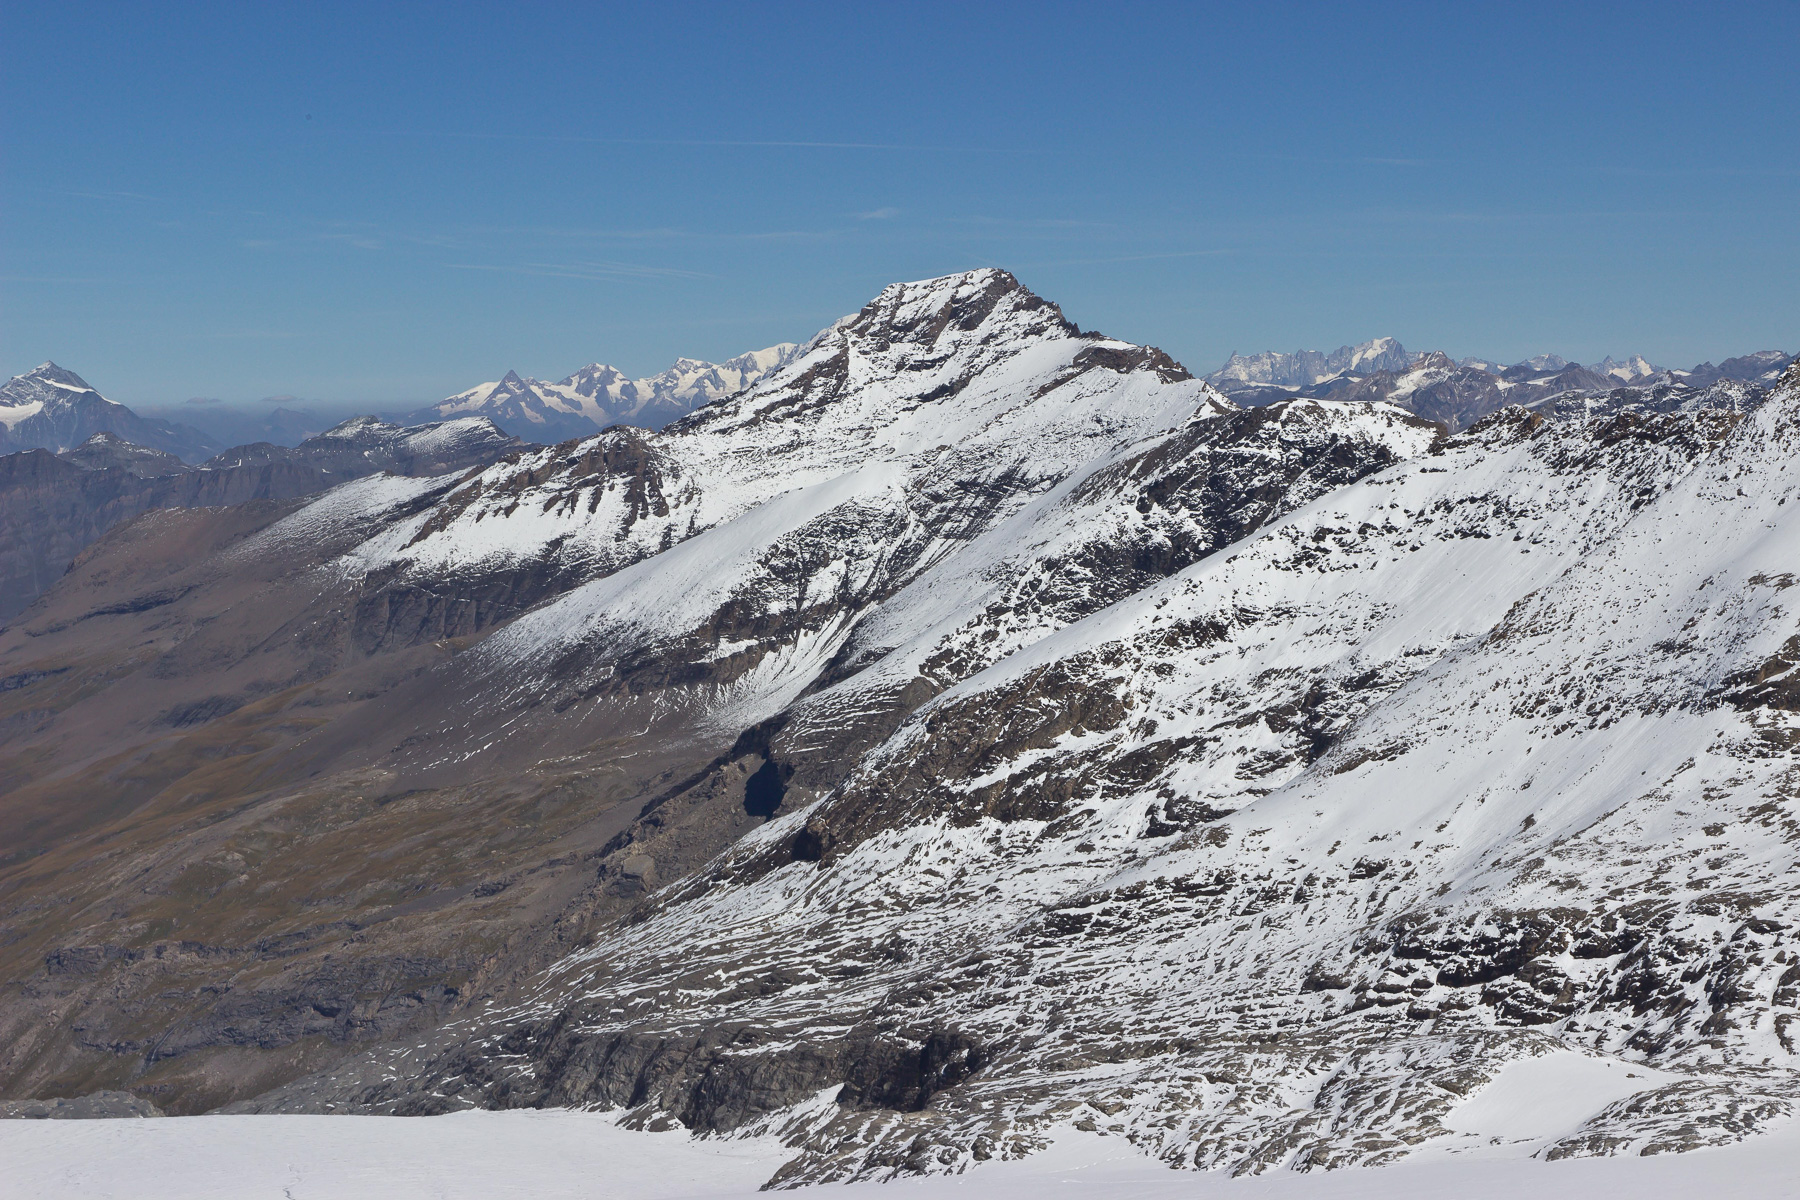 Dahinter versteckt sich der Mont Blanc; rechts davon der Gran Paradiso.